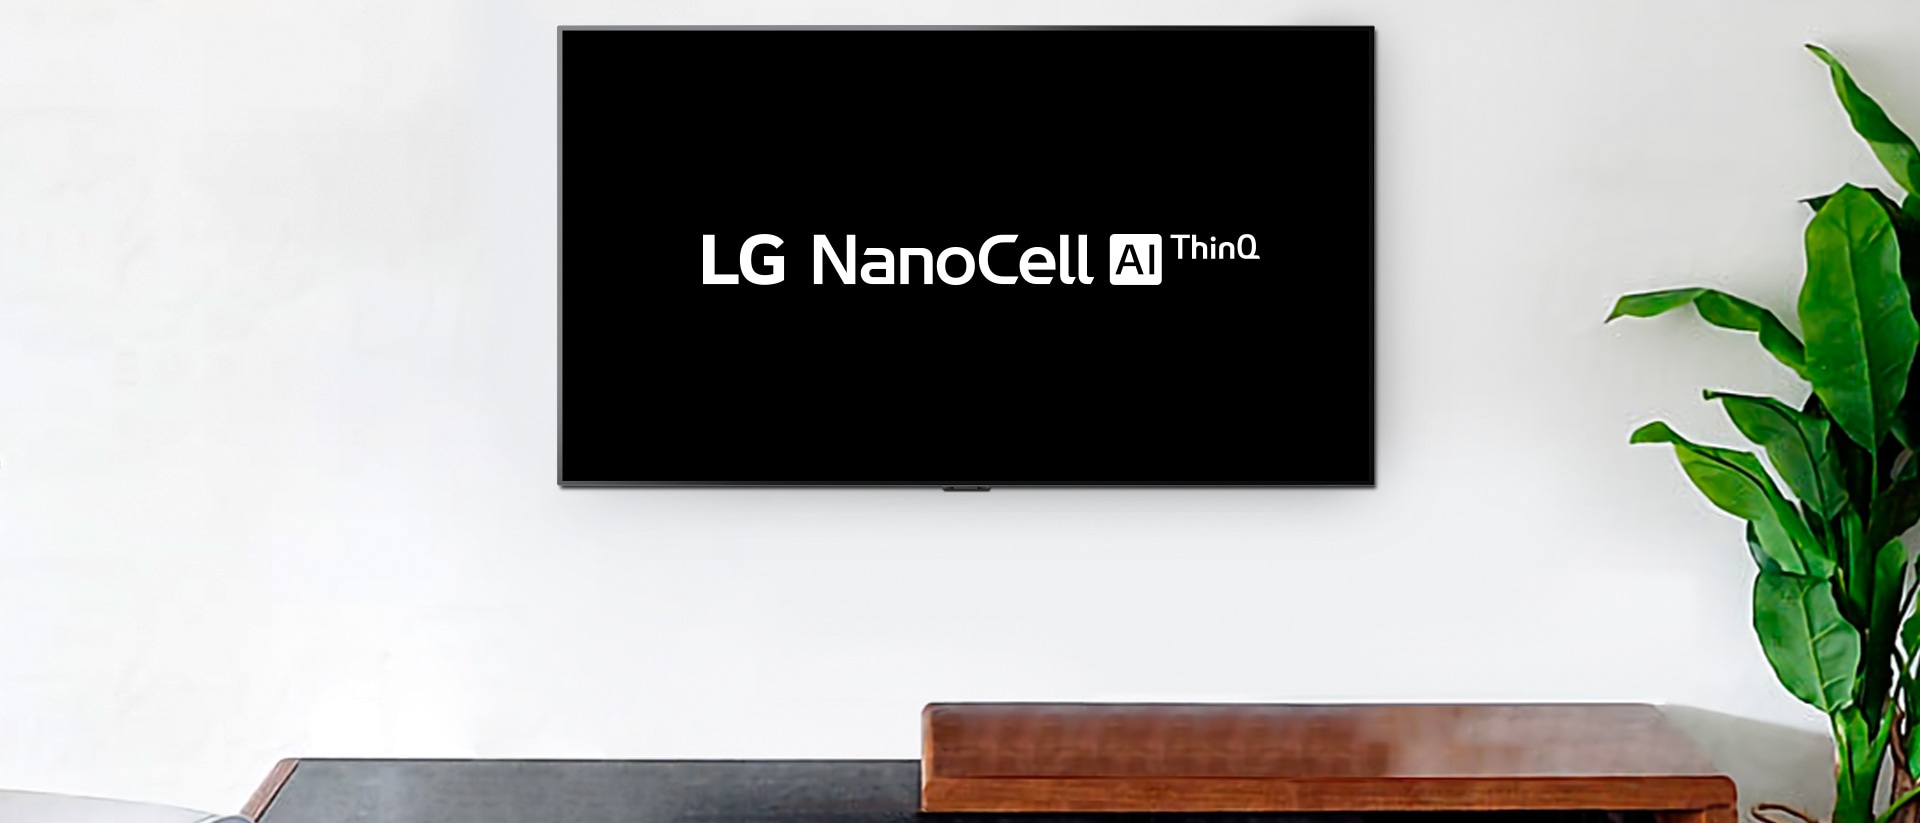 تلفزيون مثبت على الحائط يعرض شعار LG OLEDبتقنية AI ThinQ على خلفية سوداء